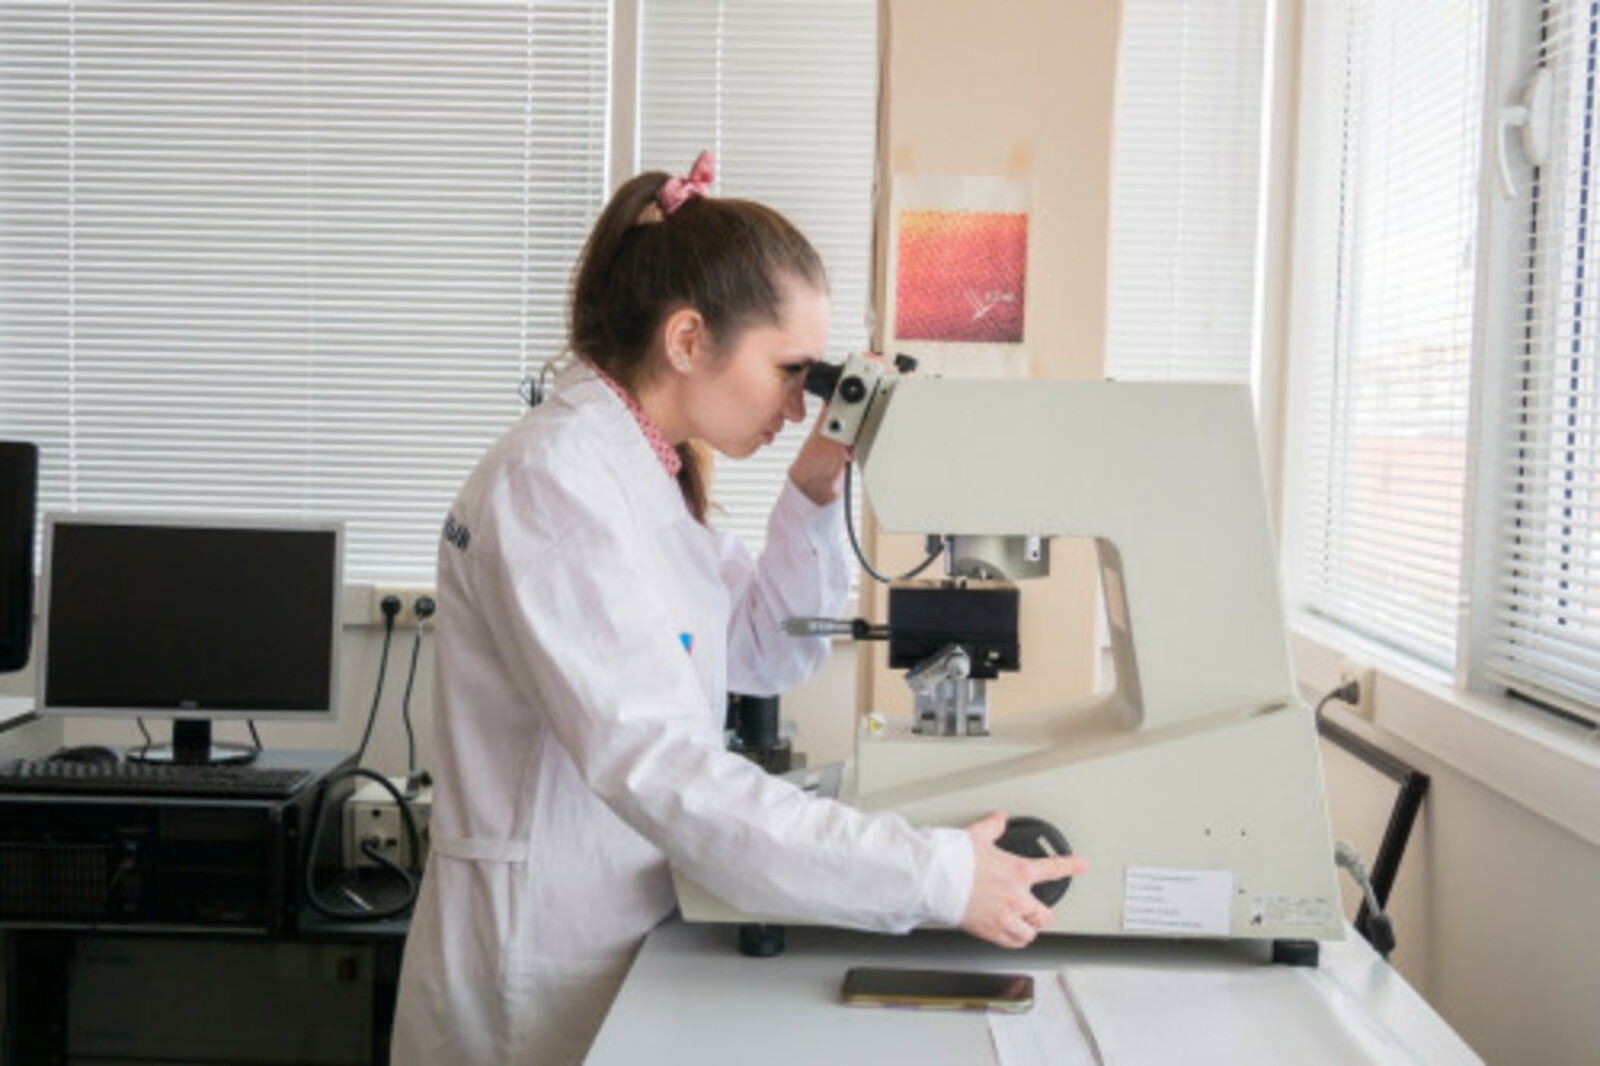 В лаборатории межвузовского студенческого кампуса разрабатывают материалы биомедицинского назначения